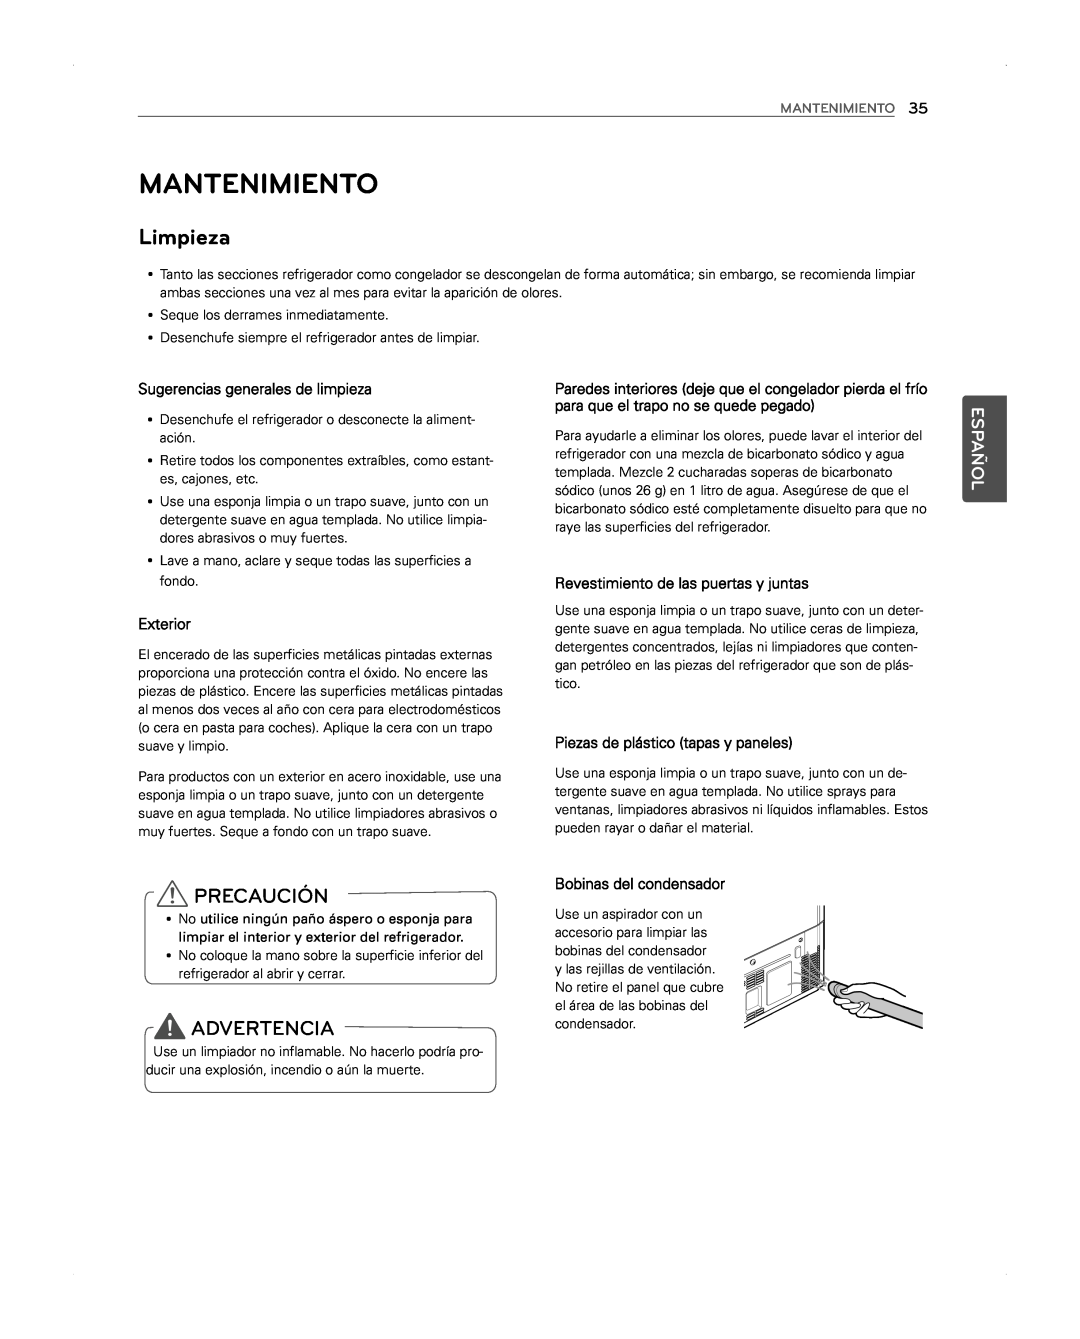 LG Electronics LFX31945ST Mantenimiento, Limpieza, Piezas de plástico tapas y paneles, Precaución, Advertencia, Español 